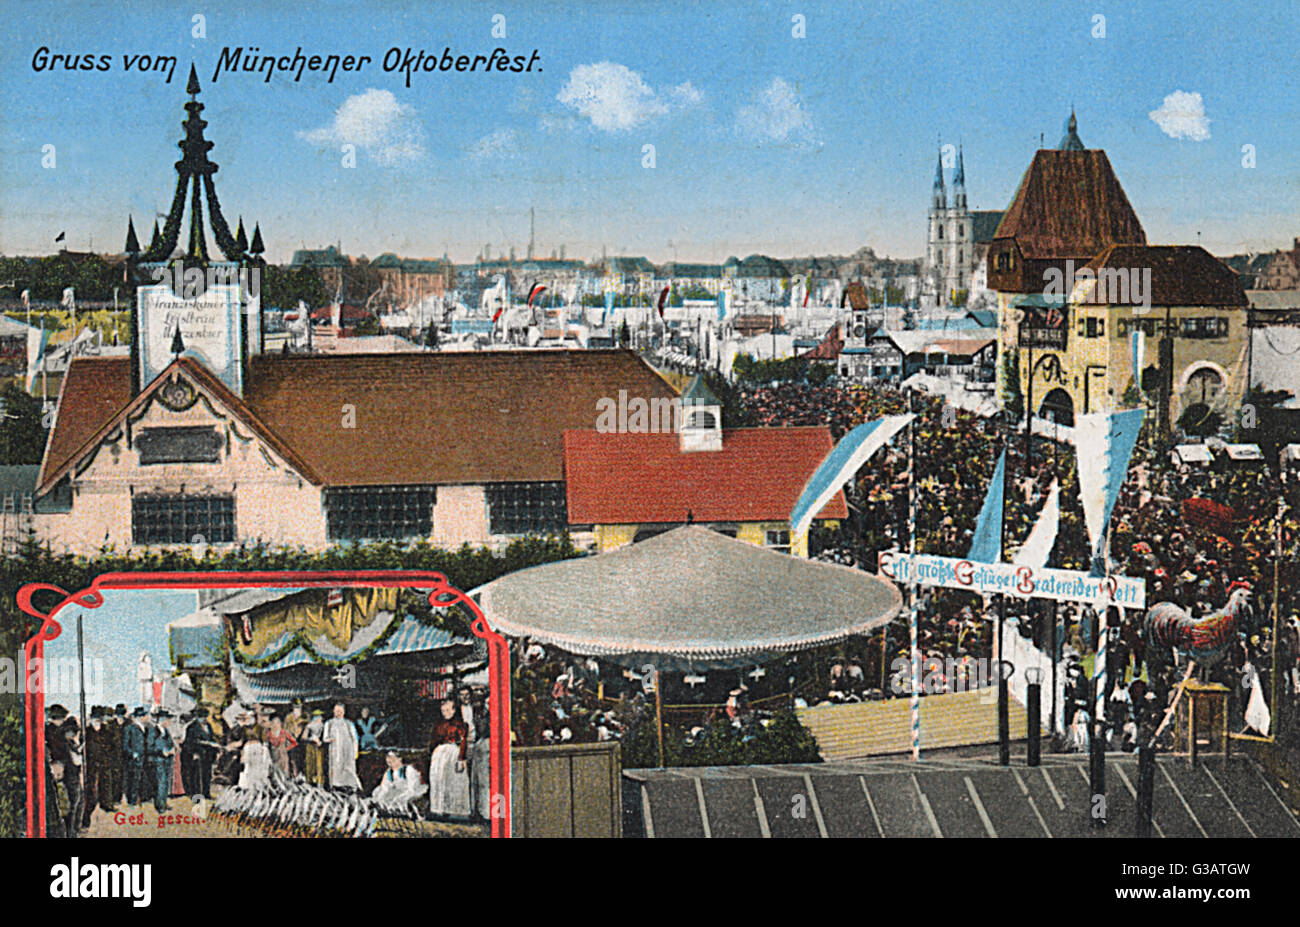 Scena Oktoberfest a Monaco di Baviera, Germania. Data: circa 1910 Foto Stock